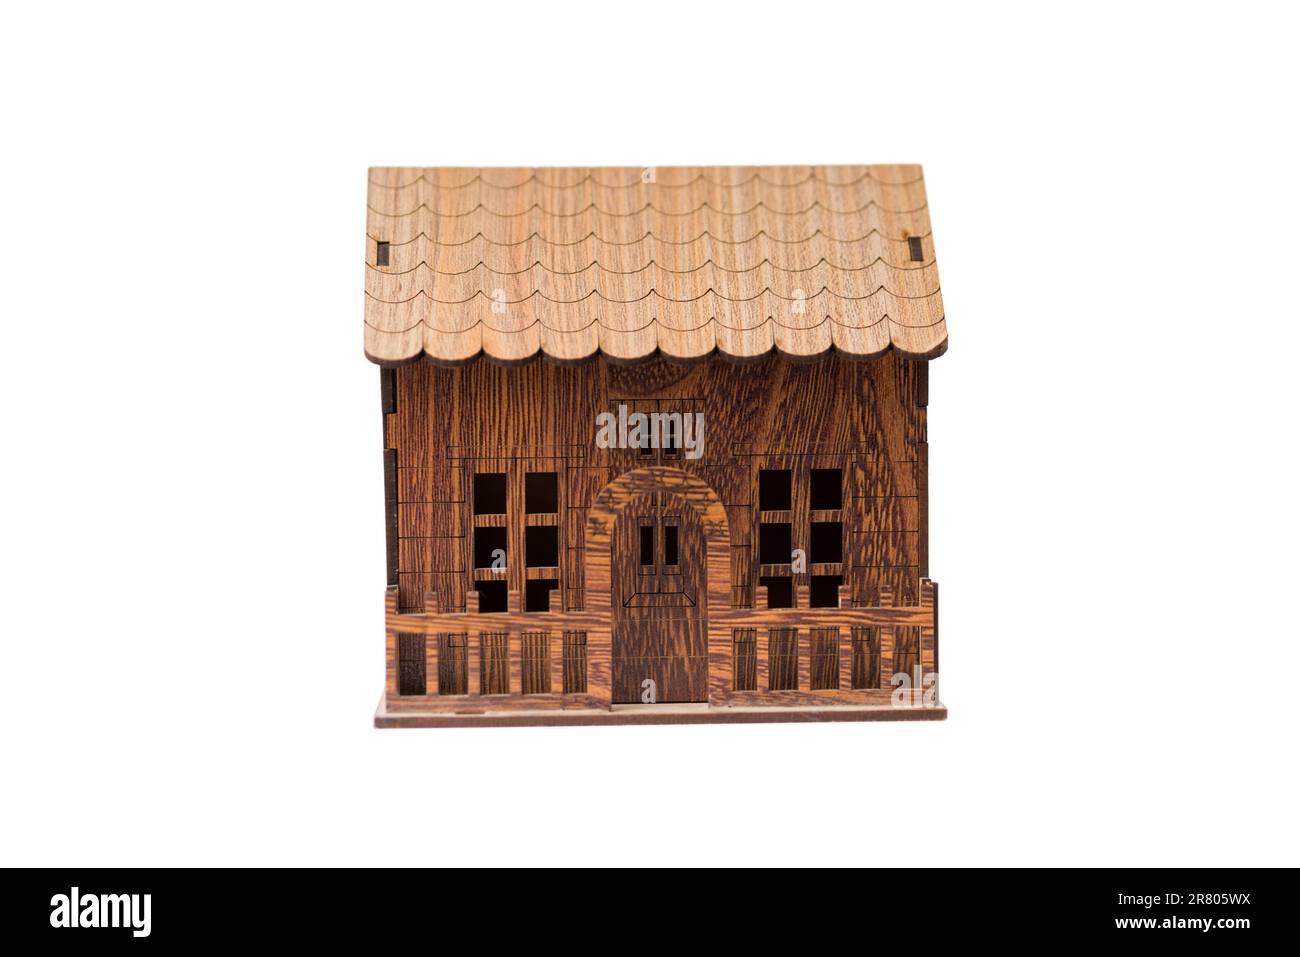 maison miniature en bois isolée sur fond blanc pour les concepts immobiliers et de construction. Banque D'Images